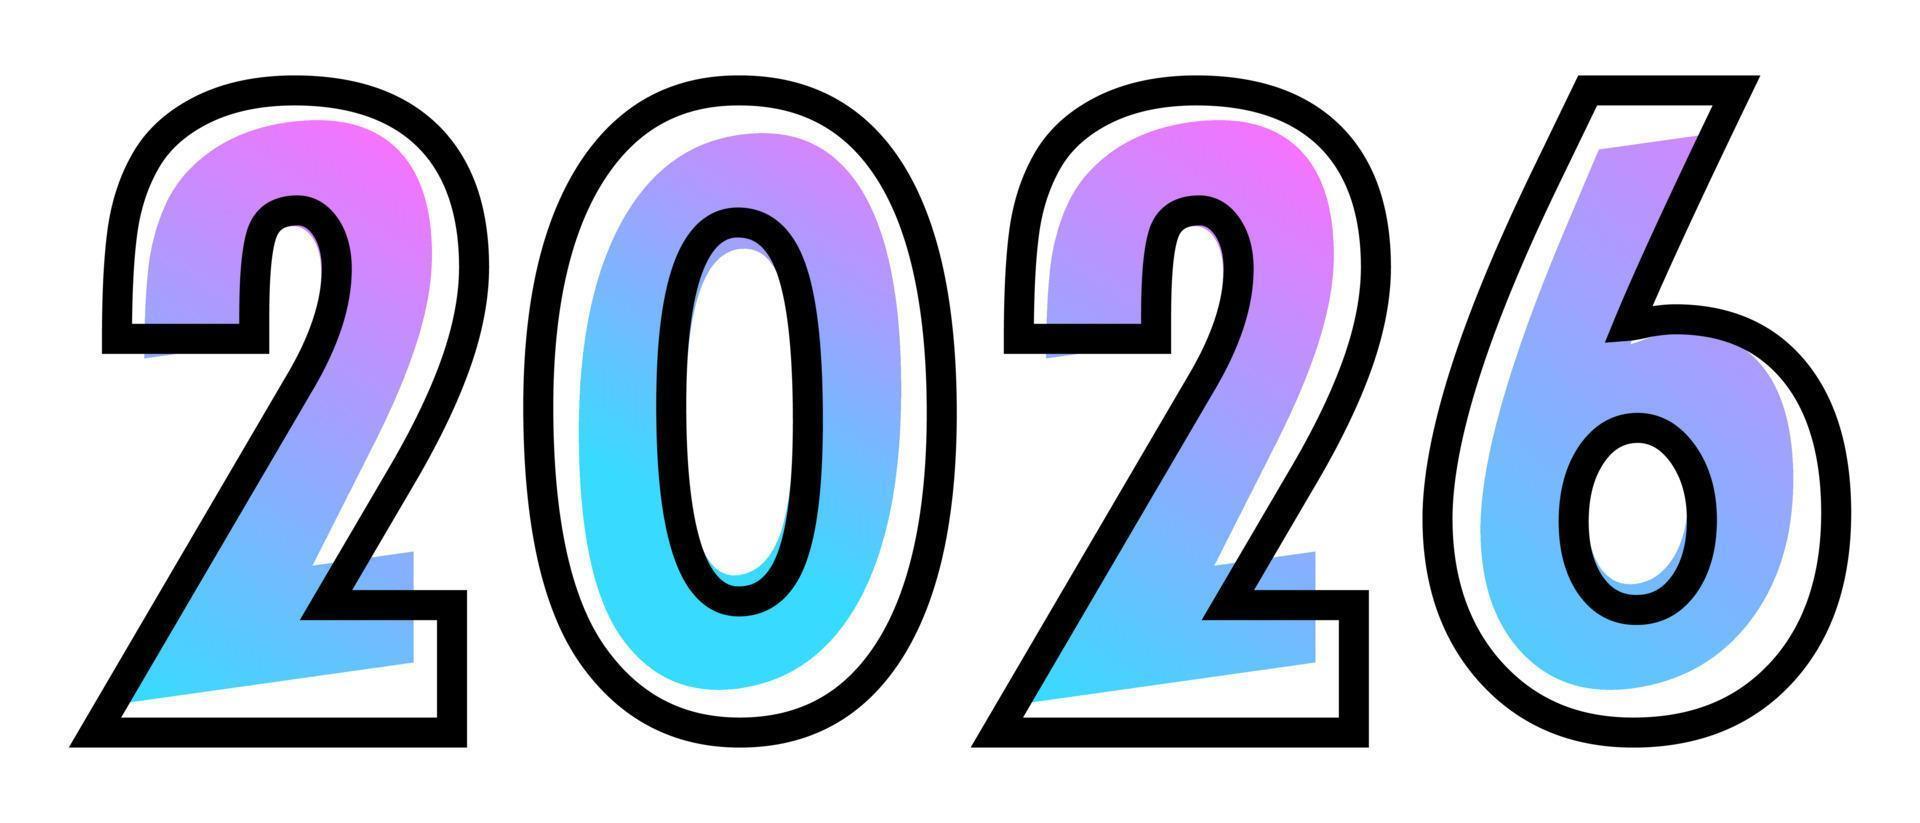 nuovo anno 2026 design testo con blu-viola pendenza colore e nero schema vettore